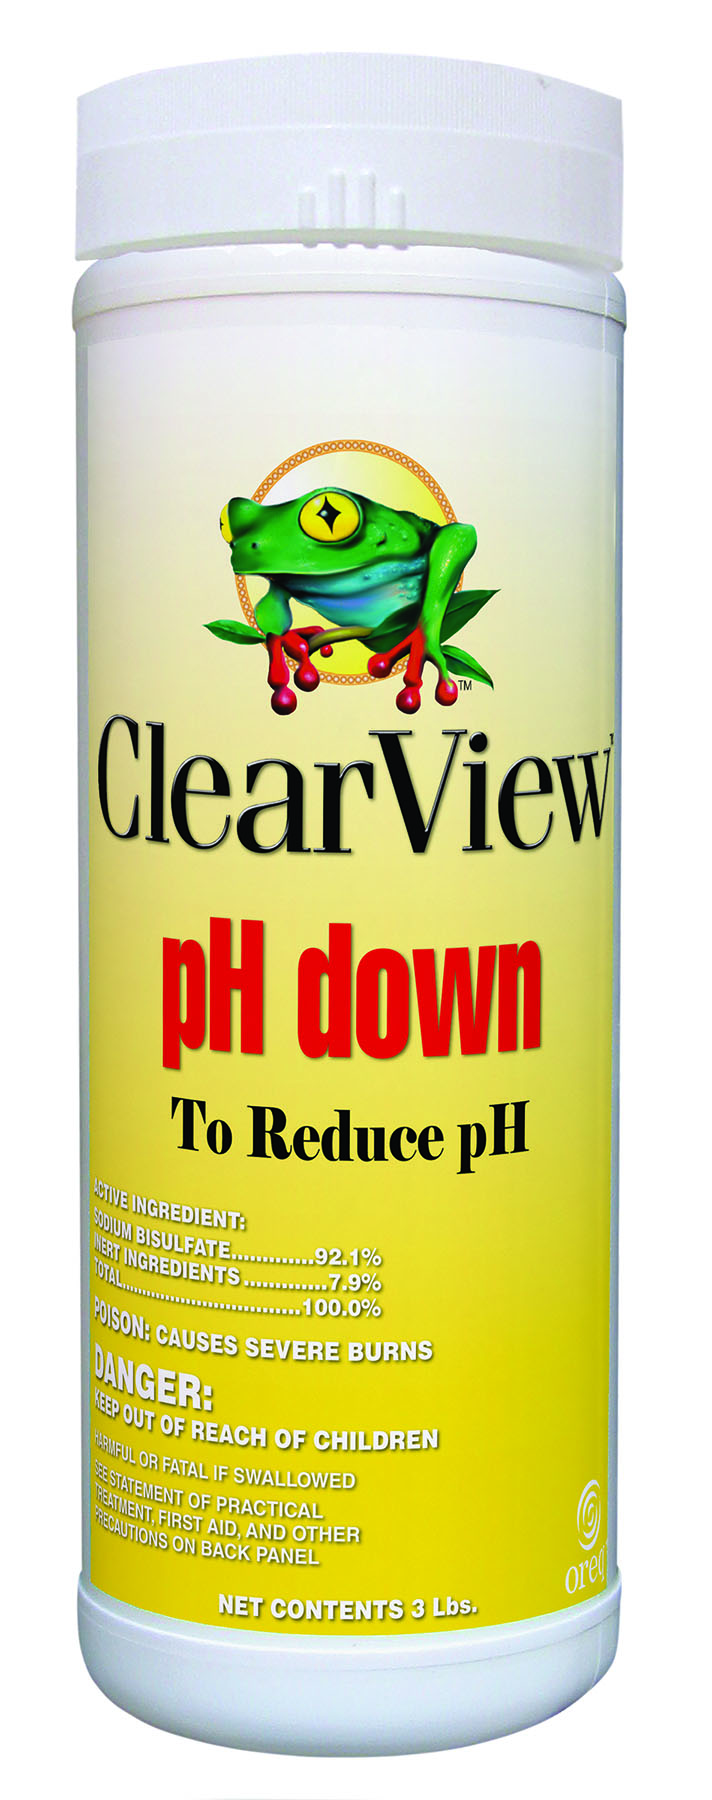 Clearview Ph Down 8X7 lb/cs - VINYL REPAIR KITS